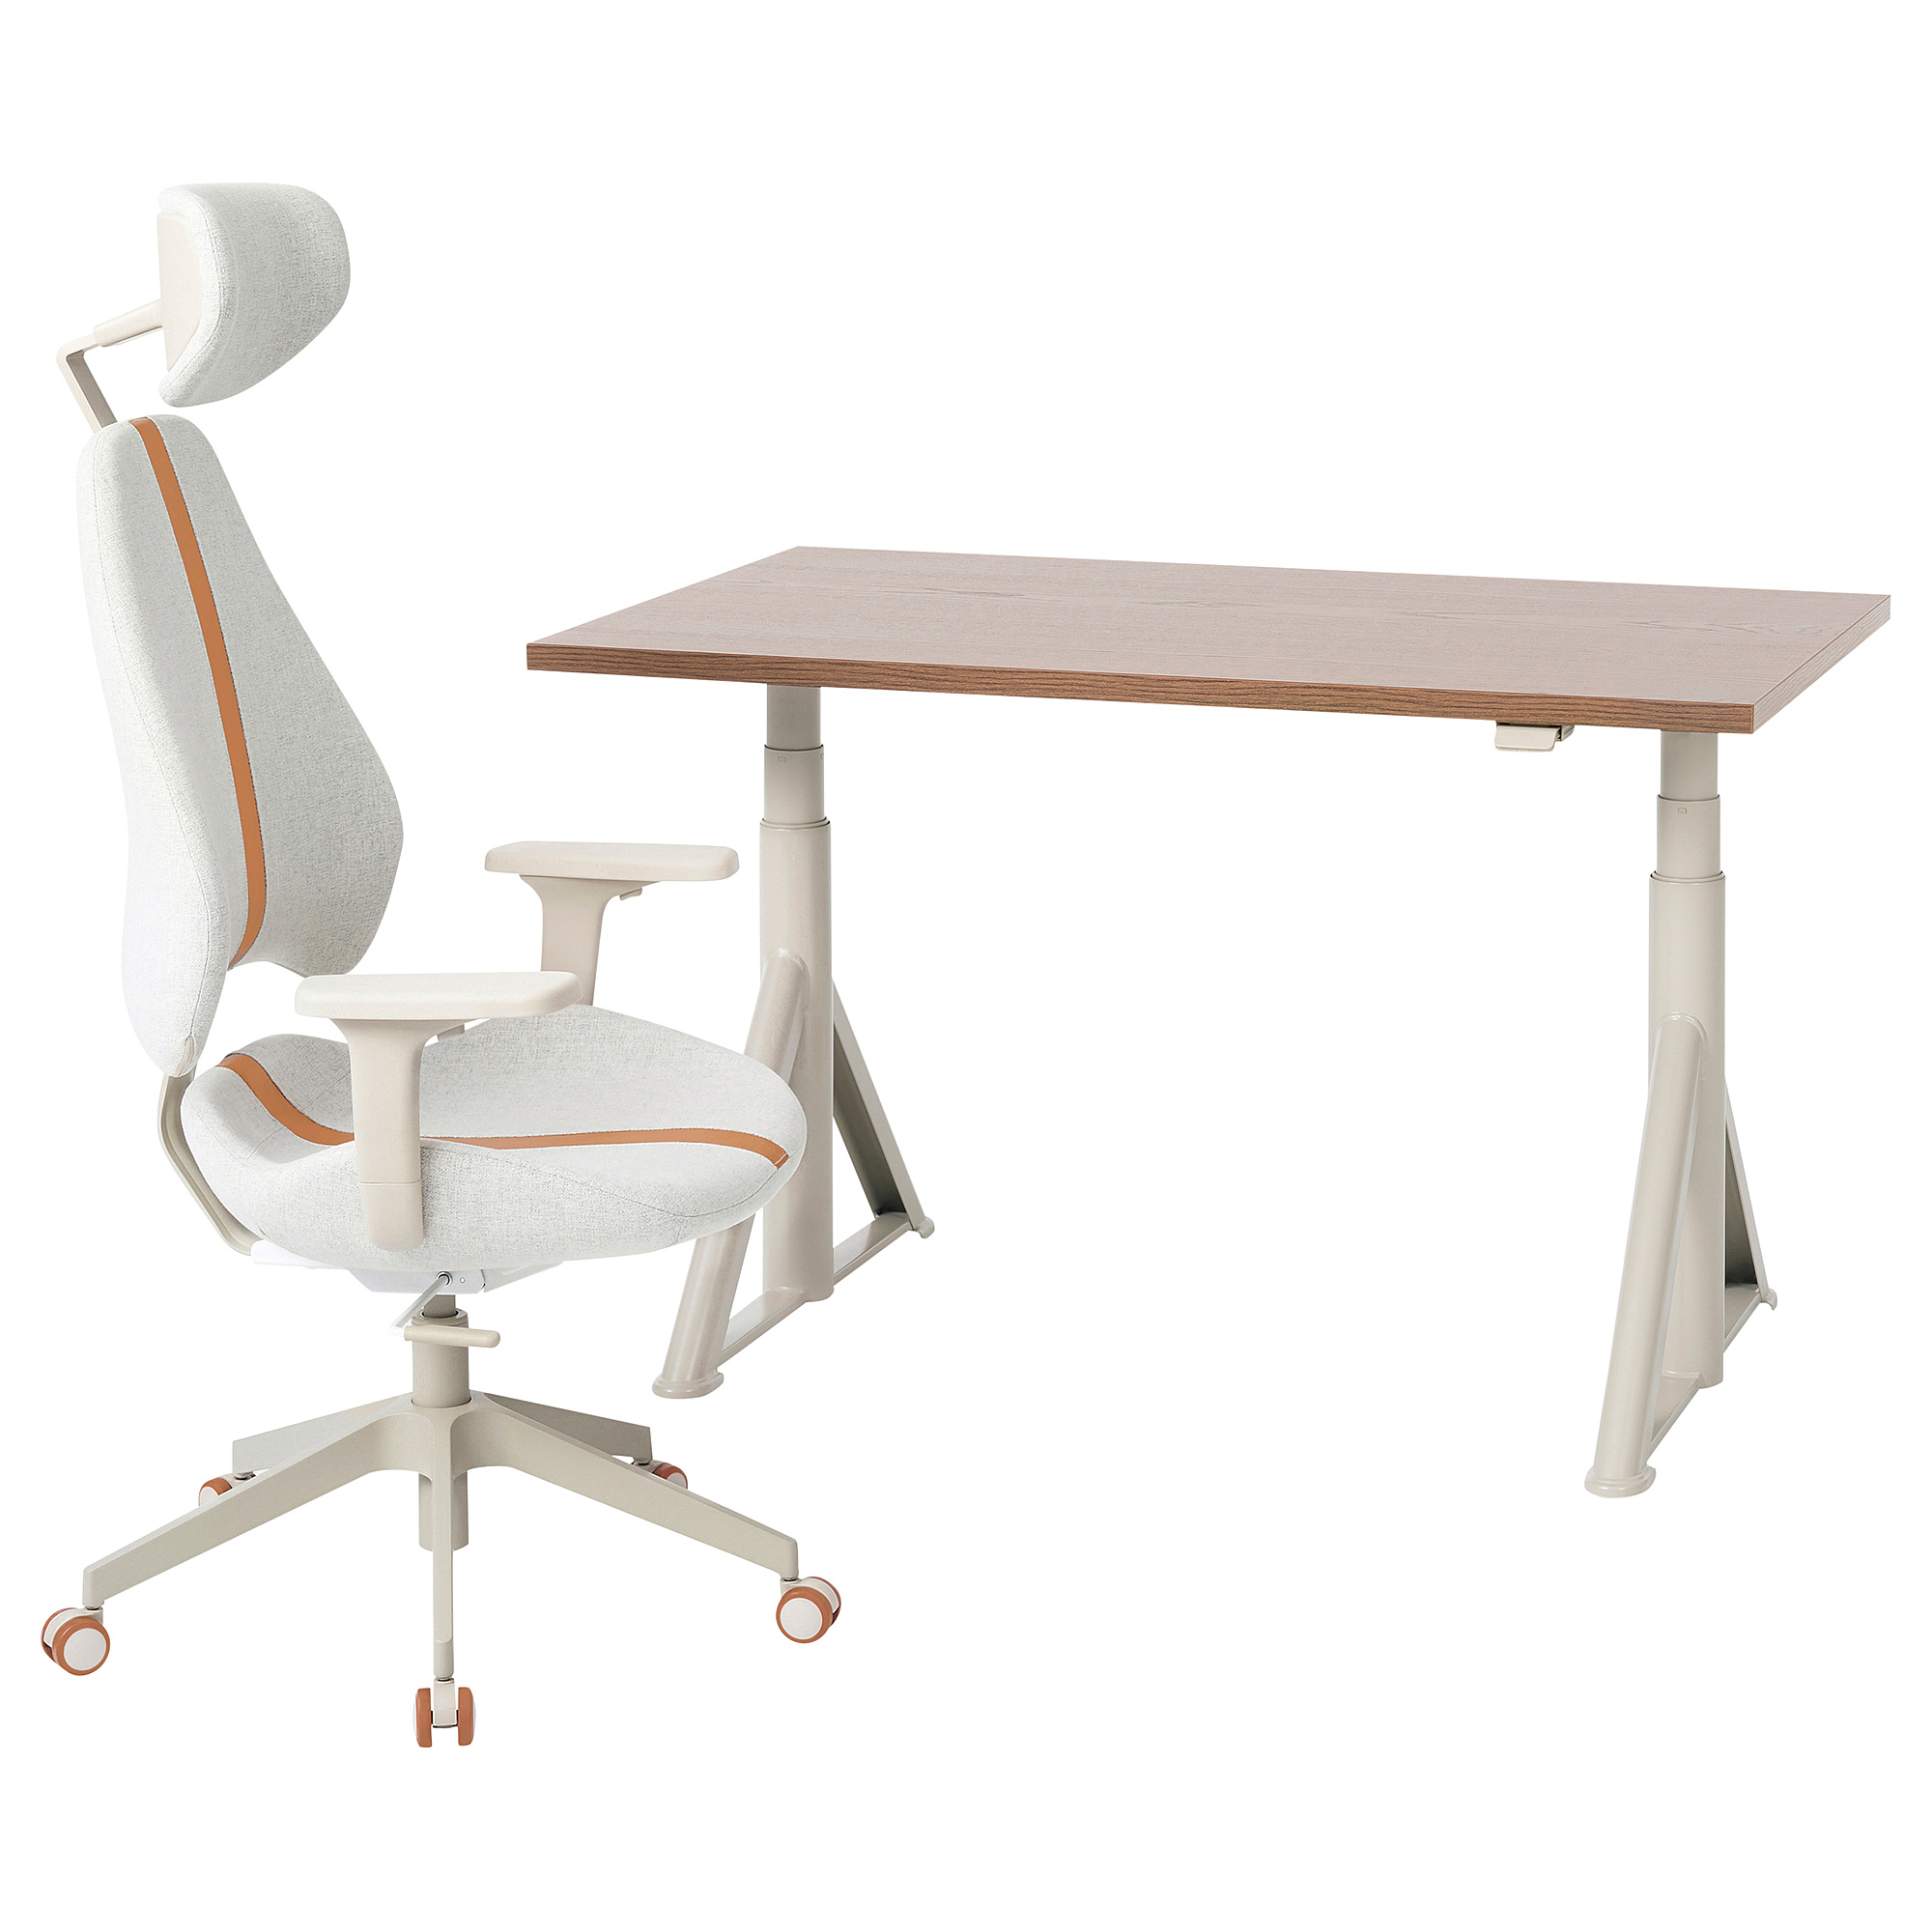 IDÅSEN/GRUPPSPEL 書桌及椅子